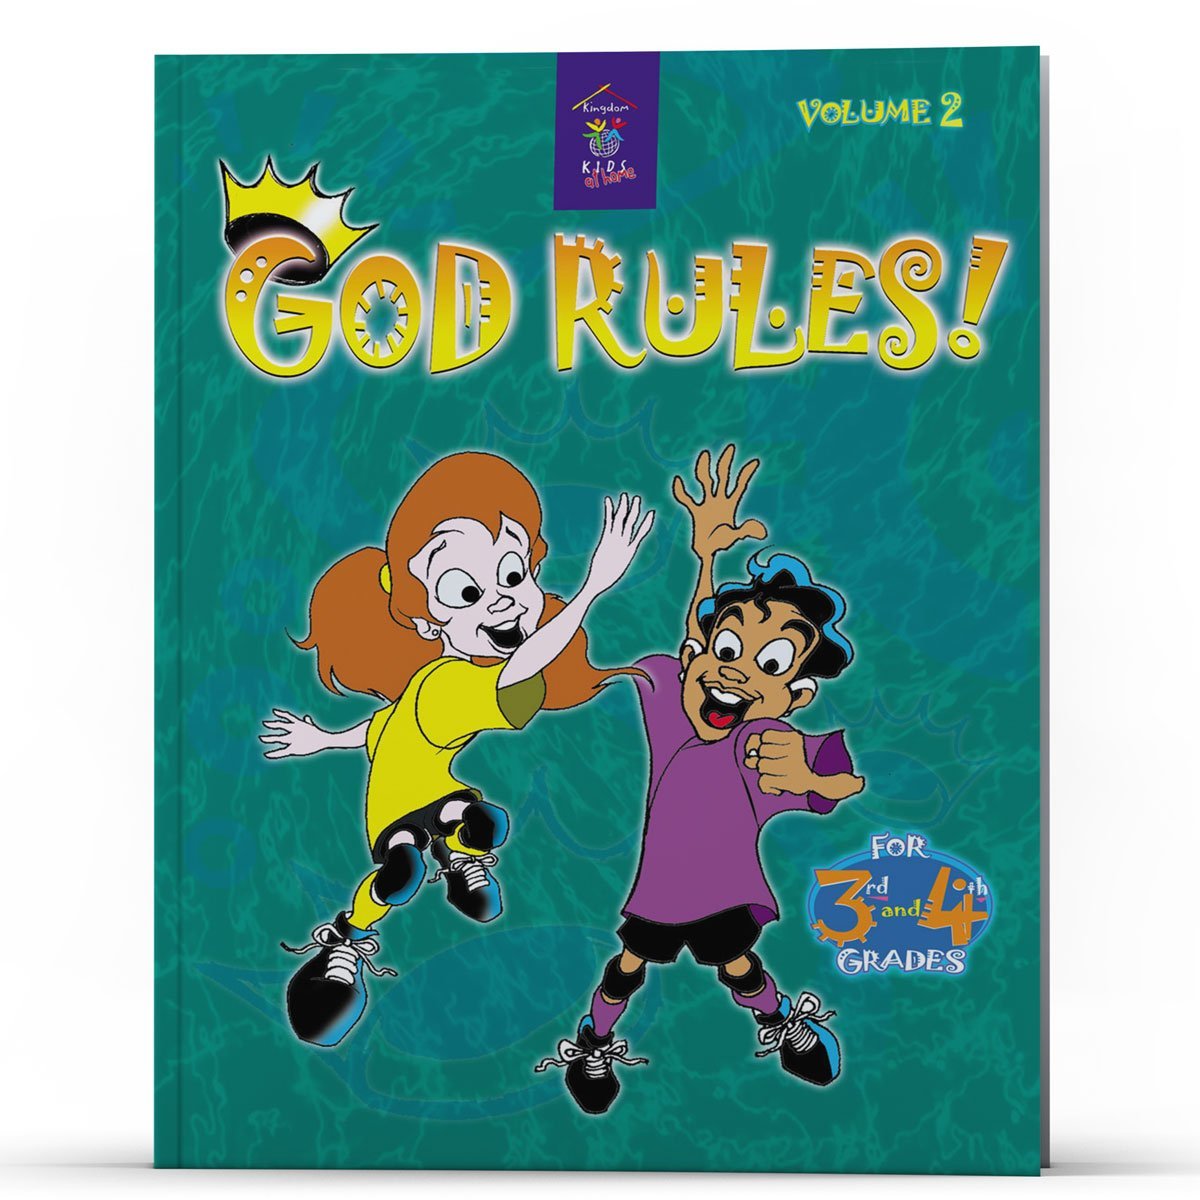 God Rules! - Illumination Publishers